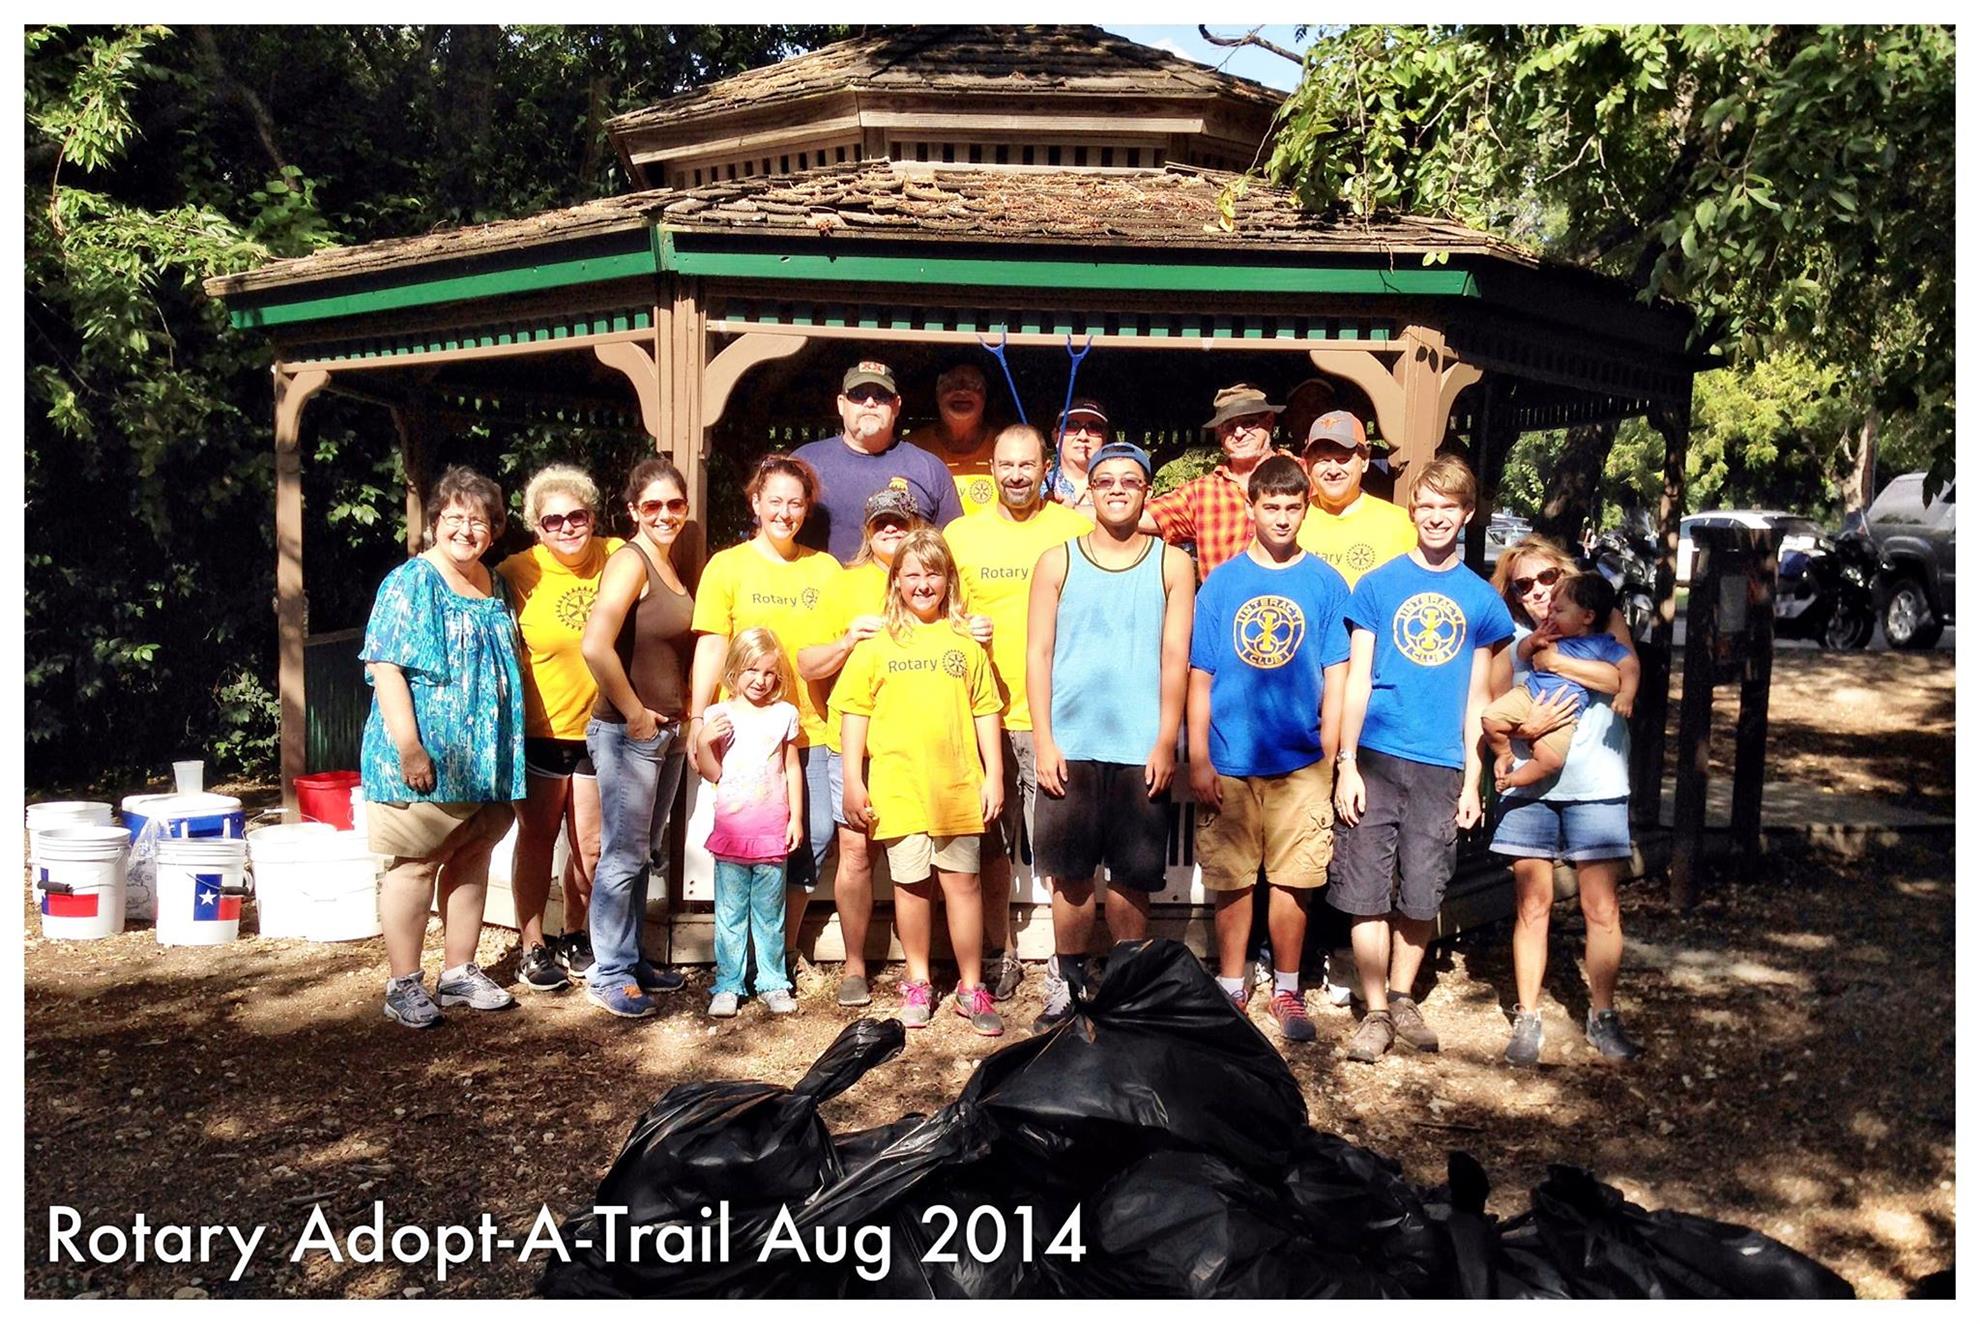 August 2014 Adopt-A-Trail